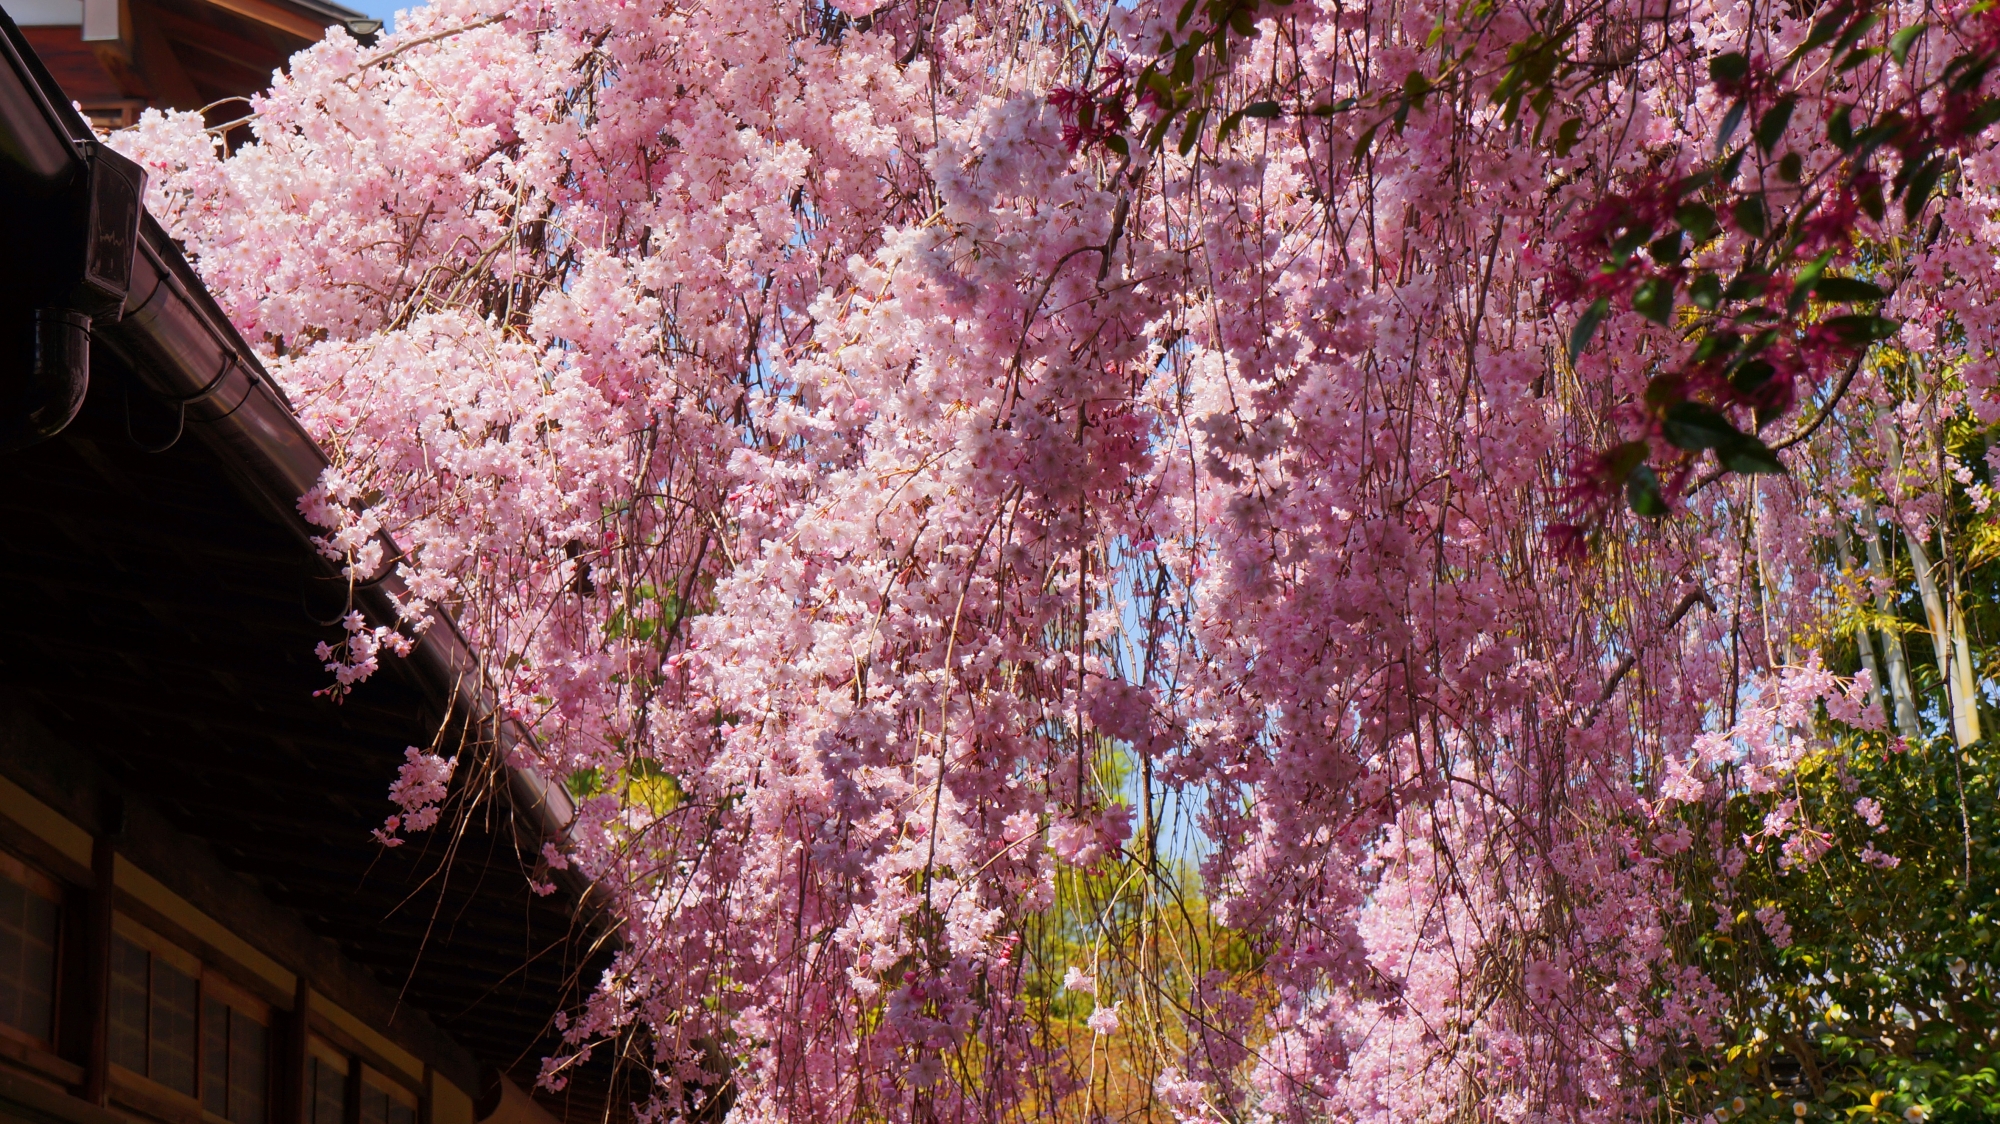 満開の桜に包まれた寺院、 桜、春、寺社仏閣 購入ファッション mdsl